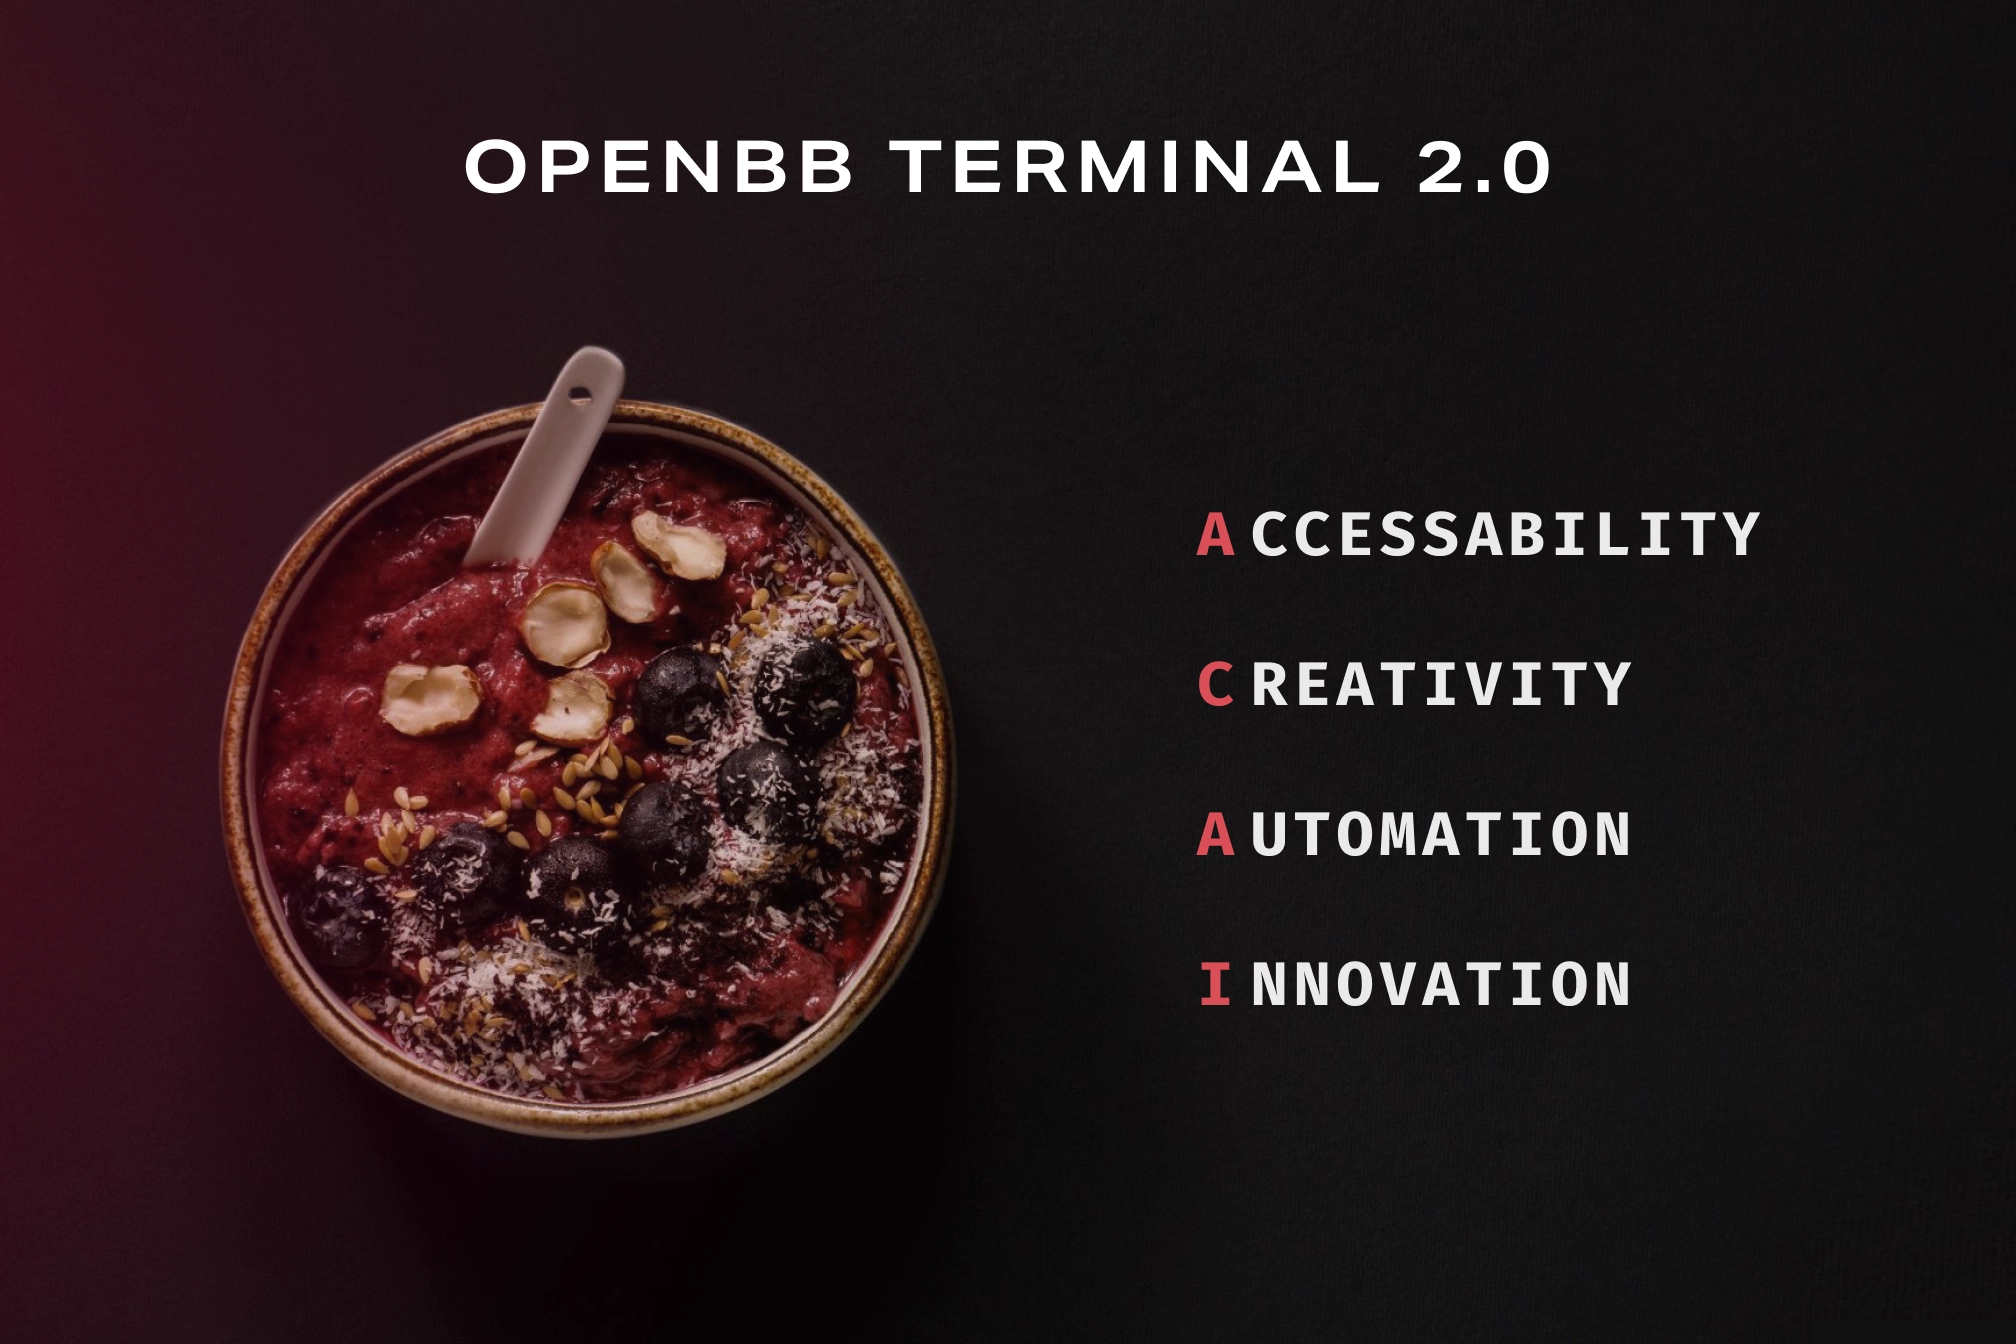 OpenBB Terminal 2.0